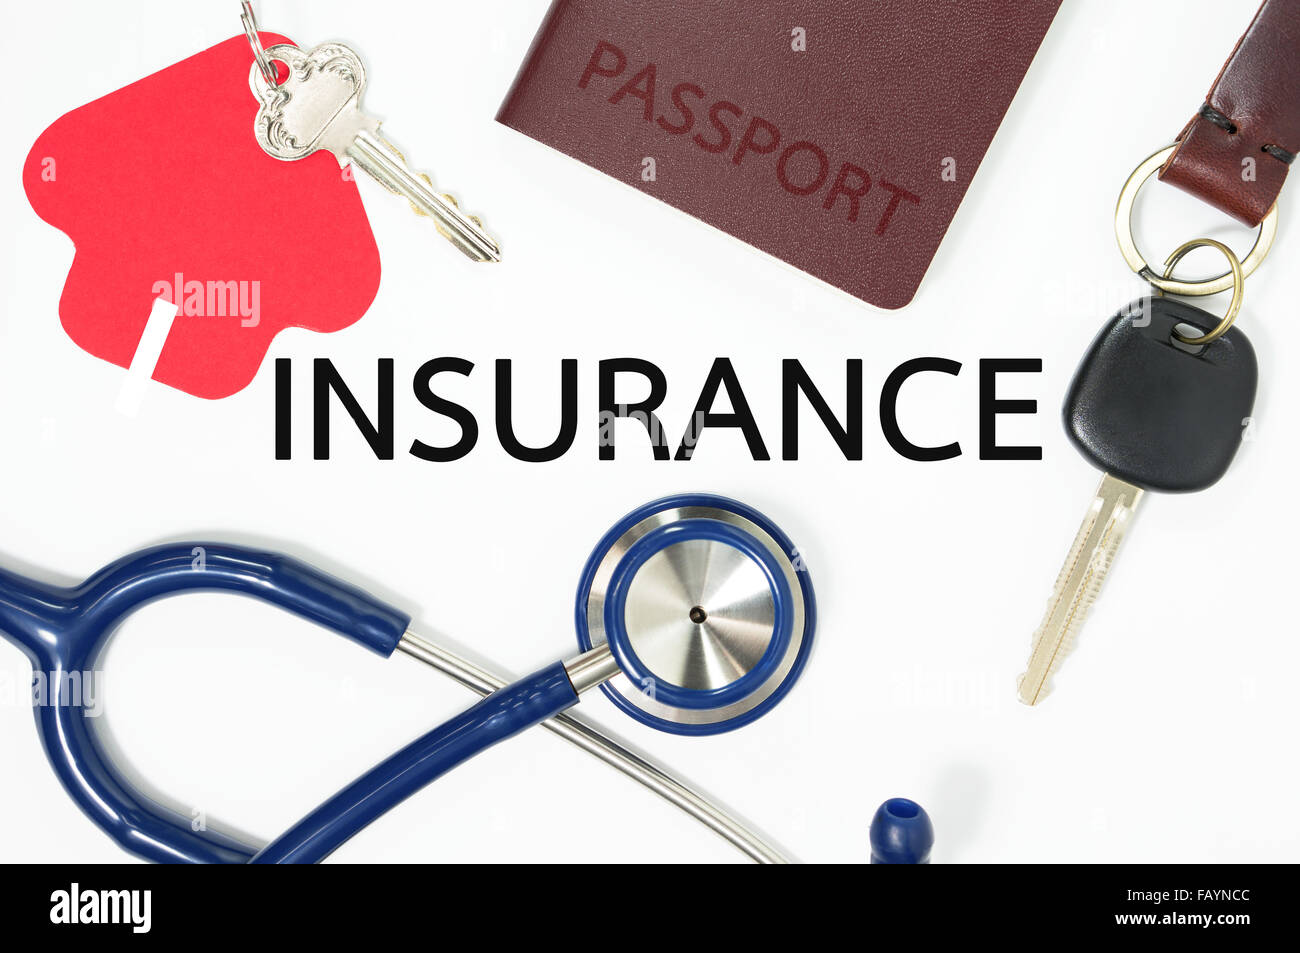 Concetto di assicurazione con molti tipi di assicurazione per la casa, auto, salute, viaggi, vita Foto Stock